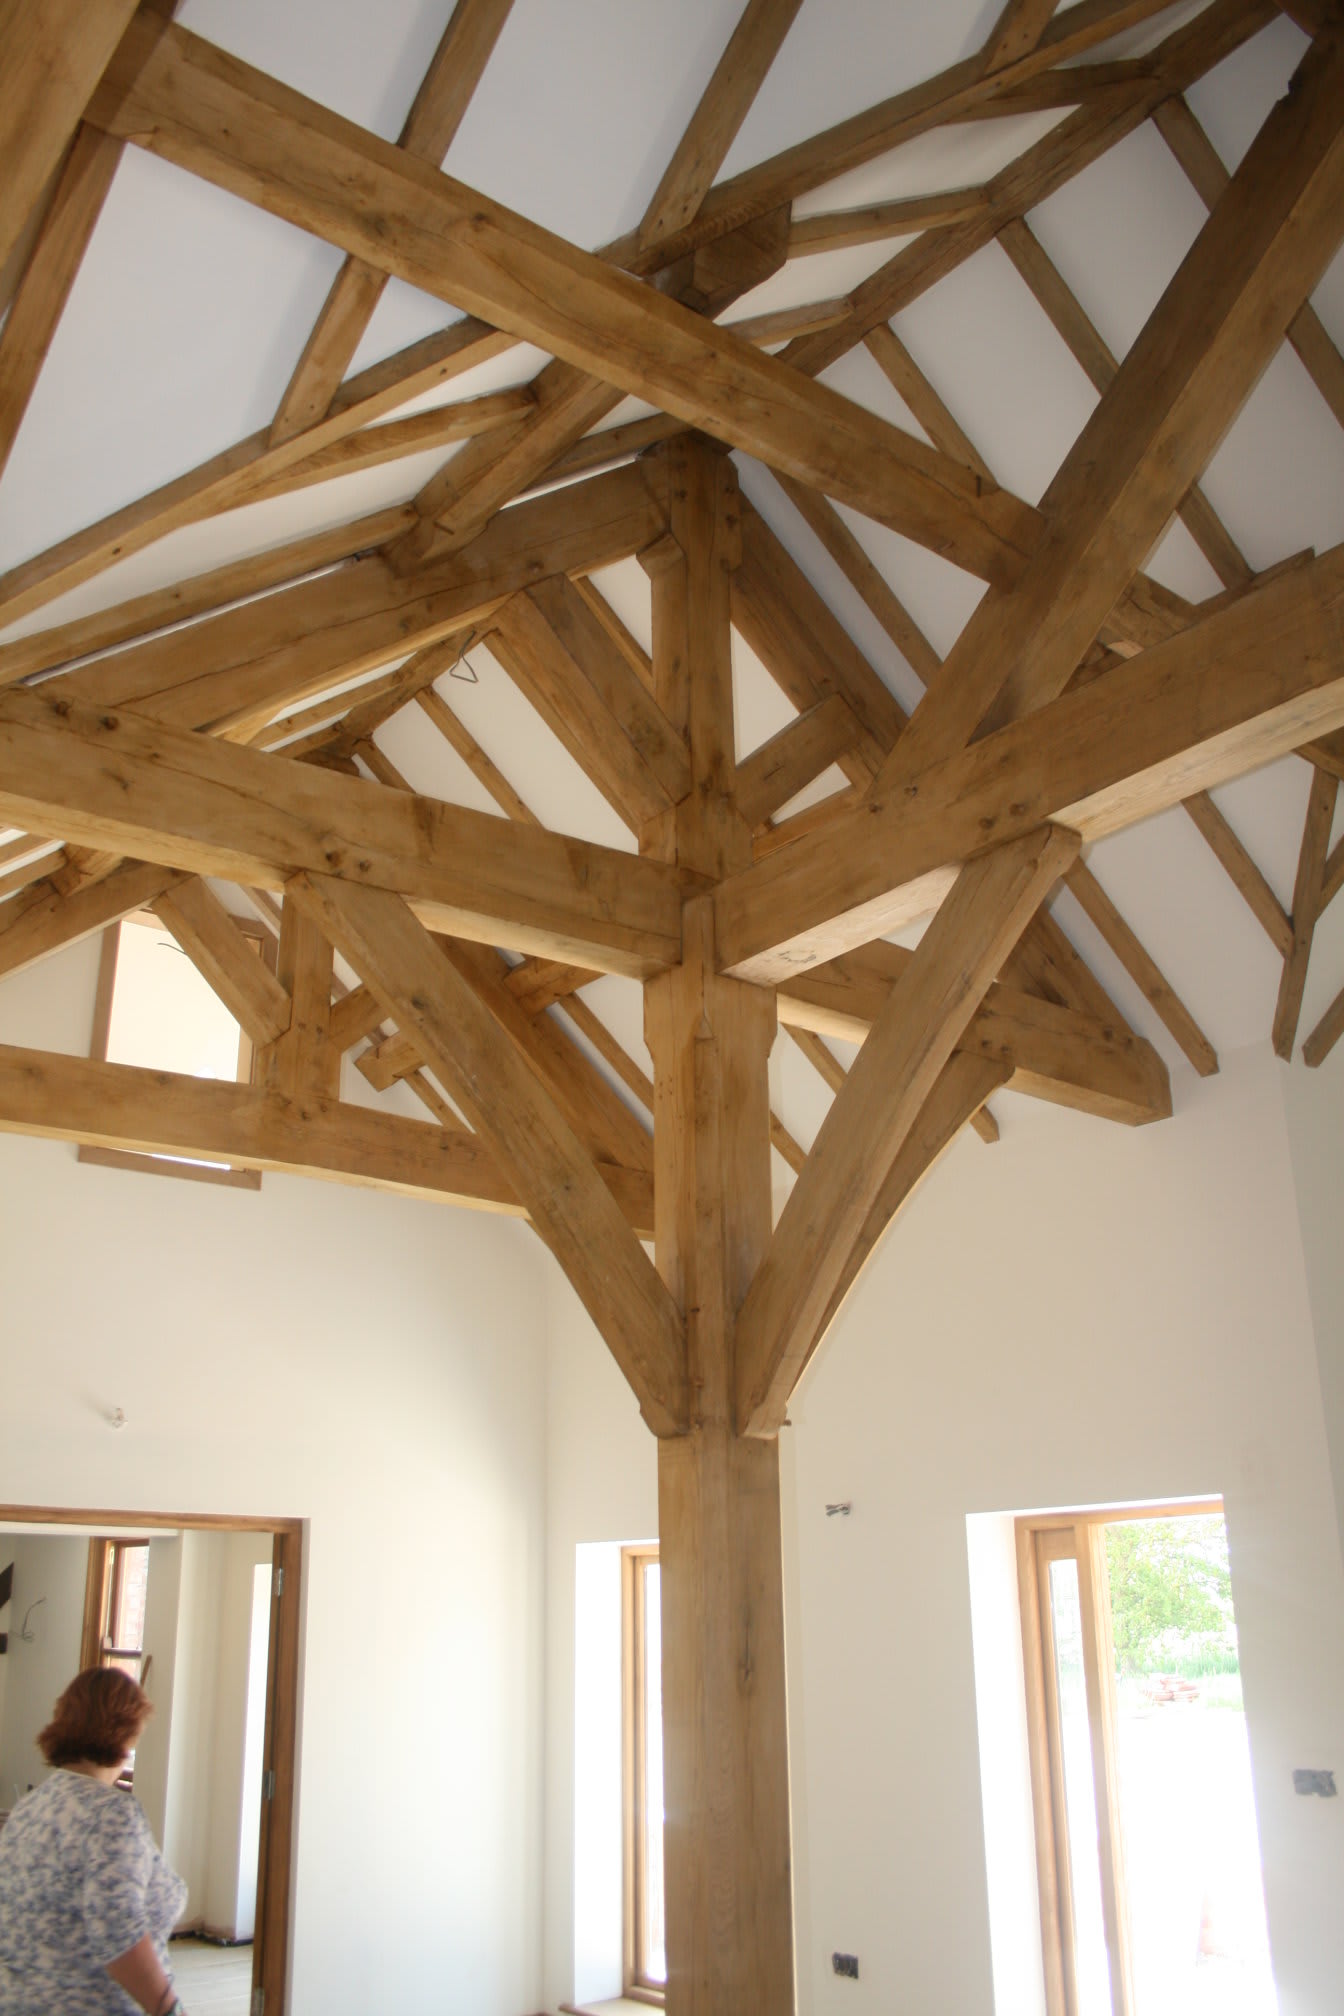 Images WYE Oak Timber Framing Ltd